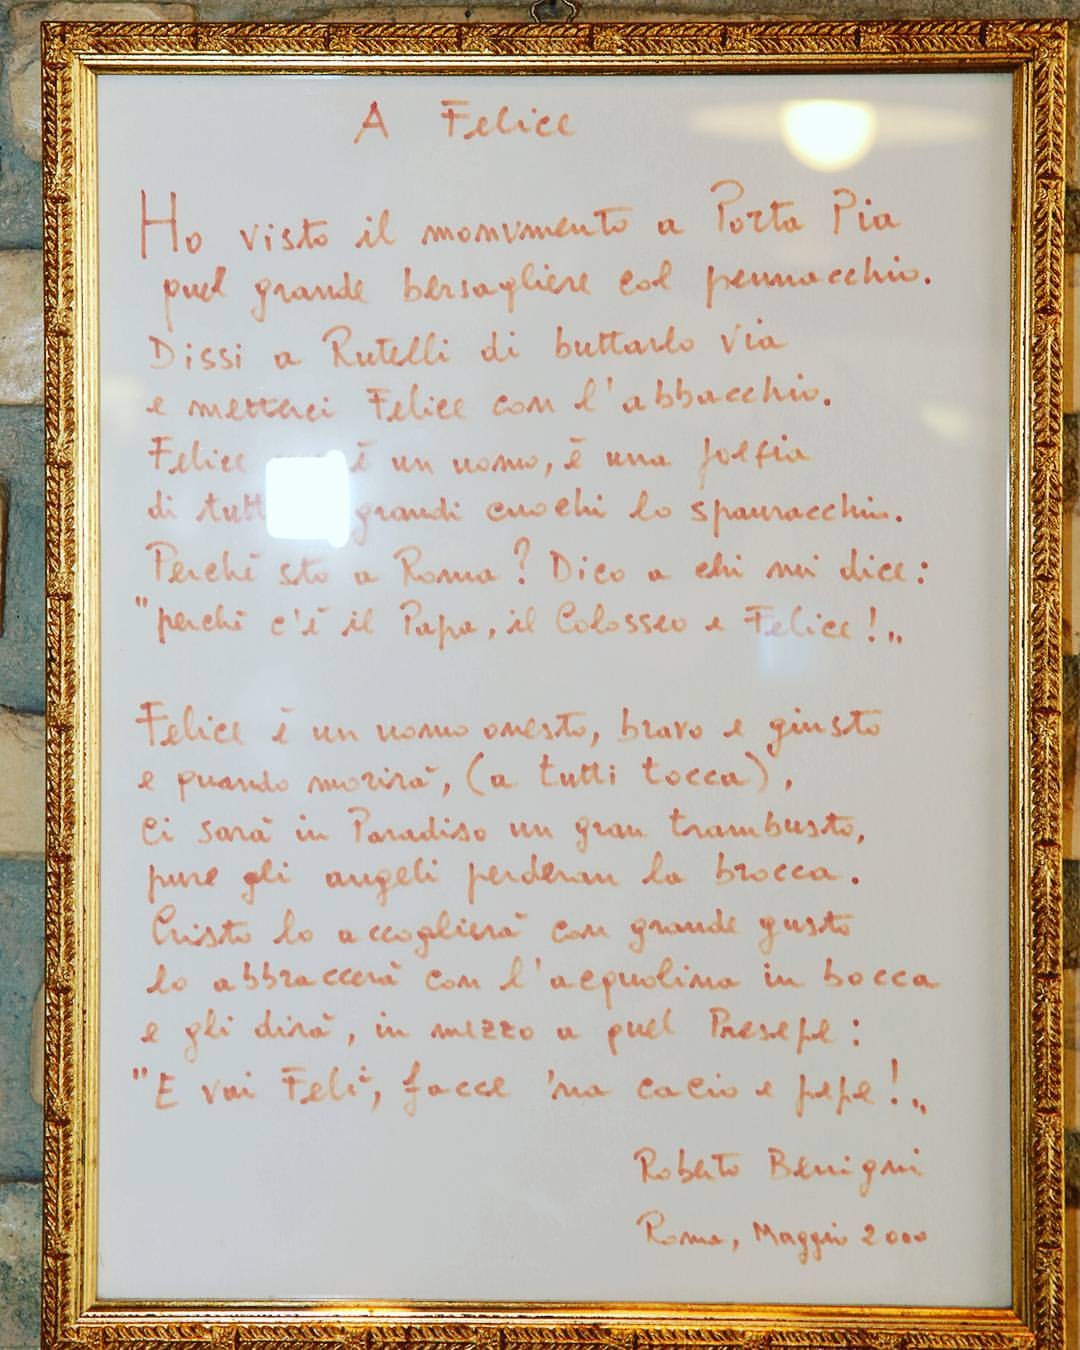 Ecco il quadretto della poesia scritta di suo pugno da Roberto Benigni in bella mostra al ristorante trattoria Felice a...